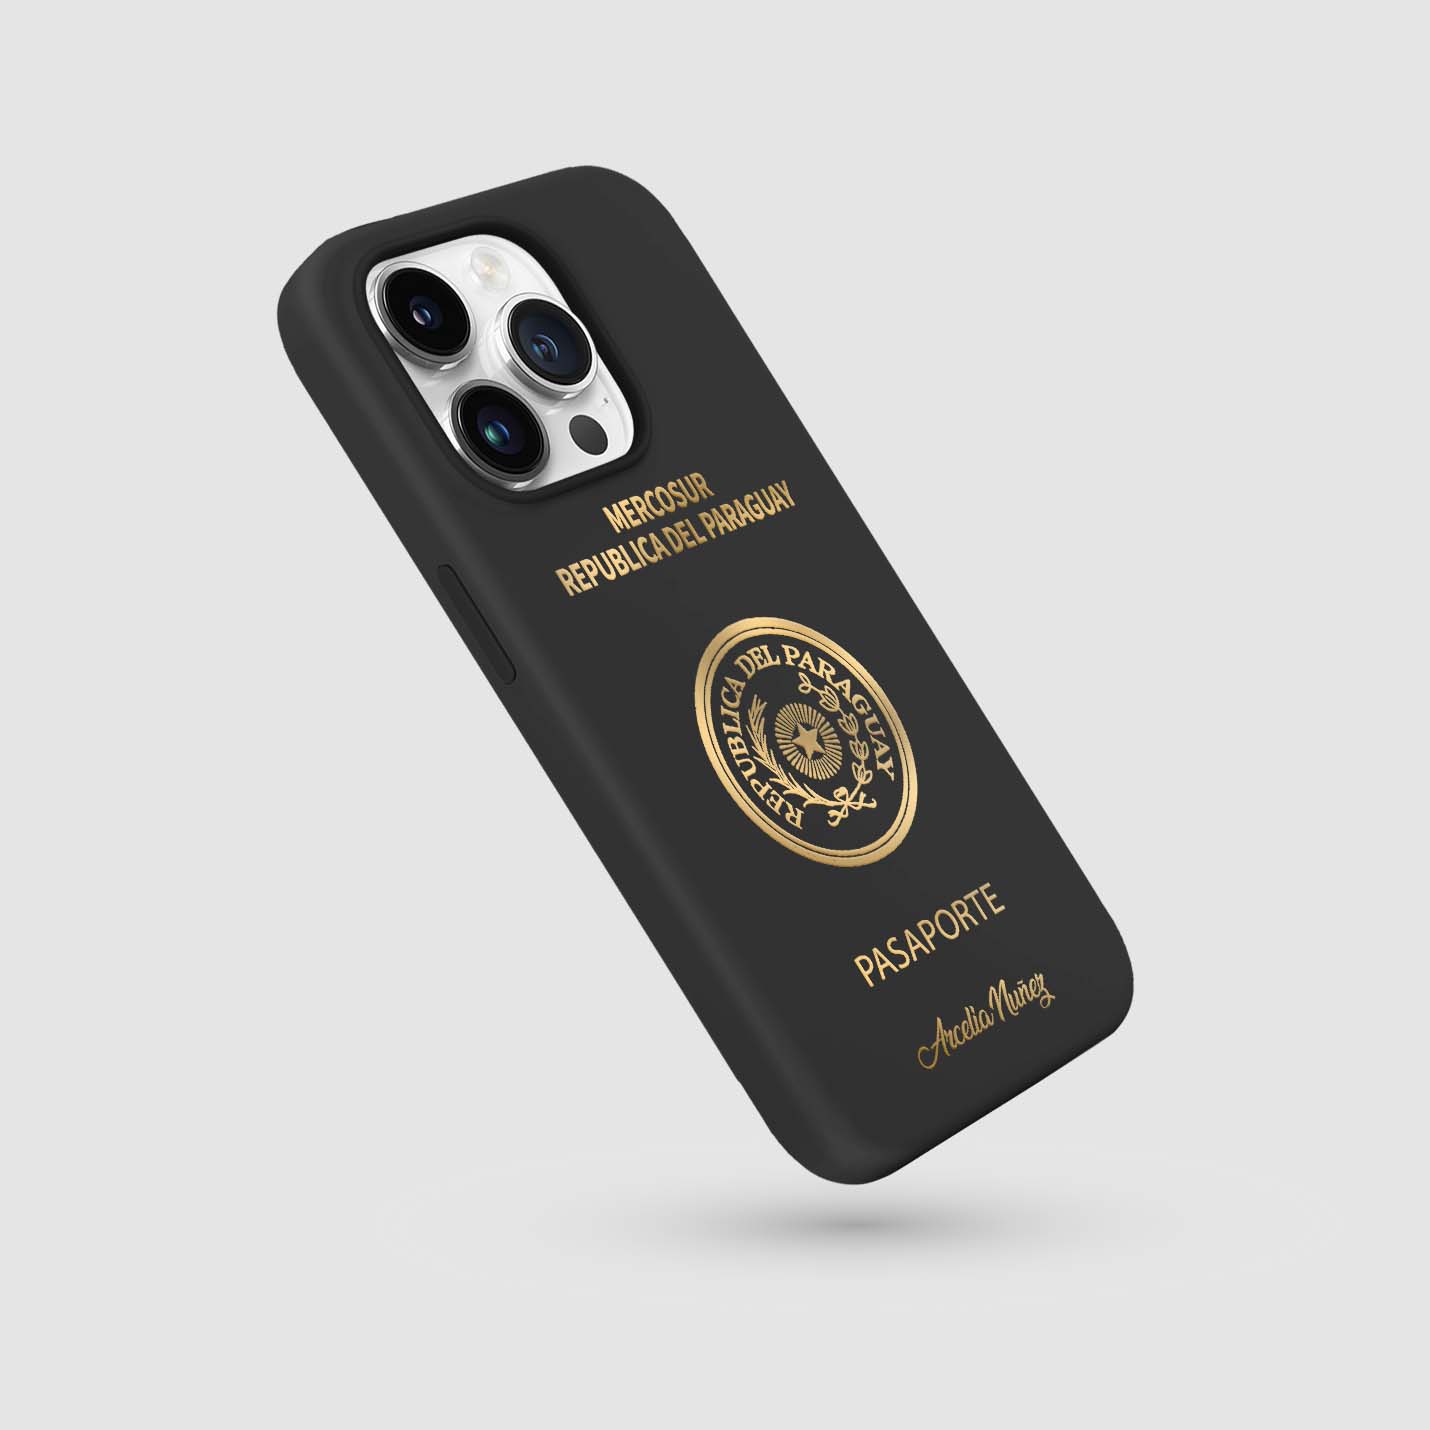 Handyhüllen mit Reisepass - Paraguay - 1instaphone